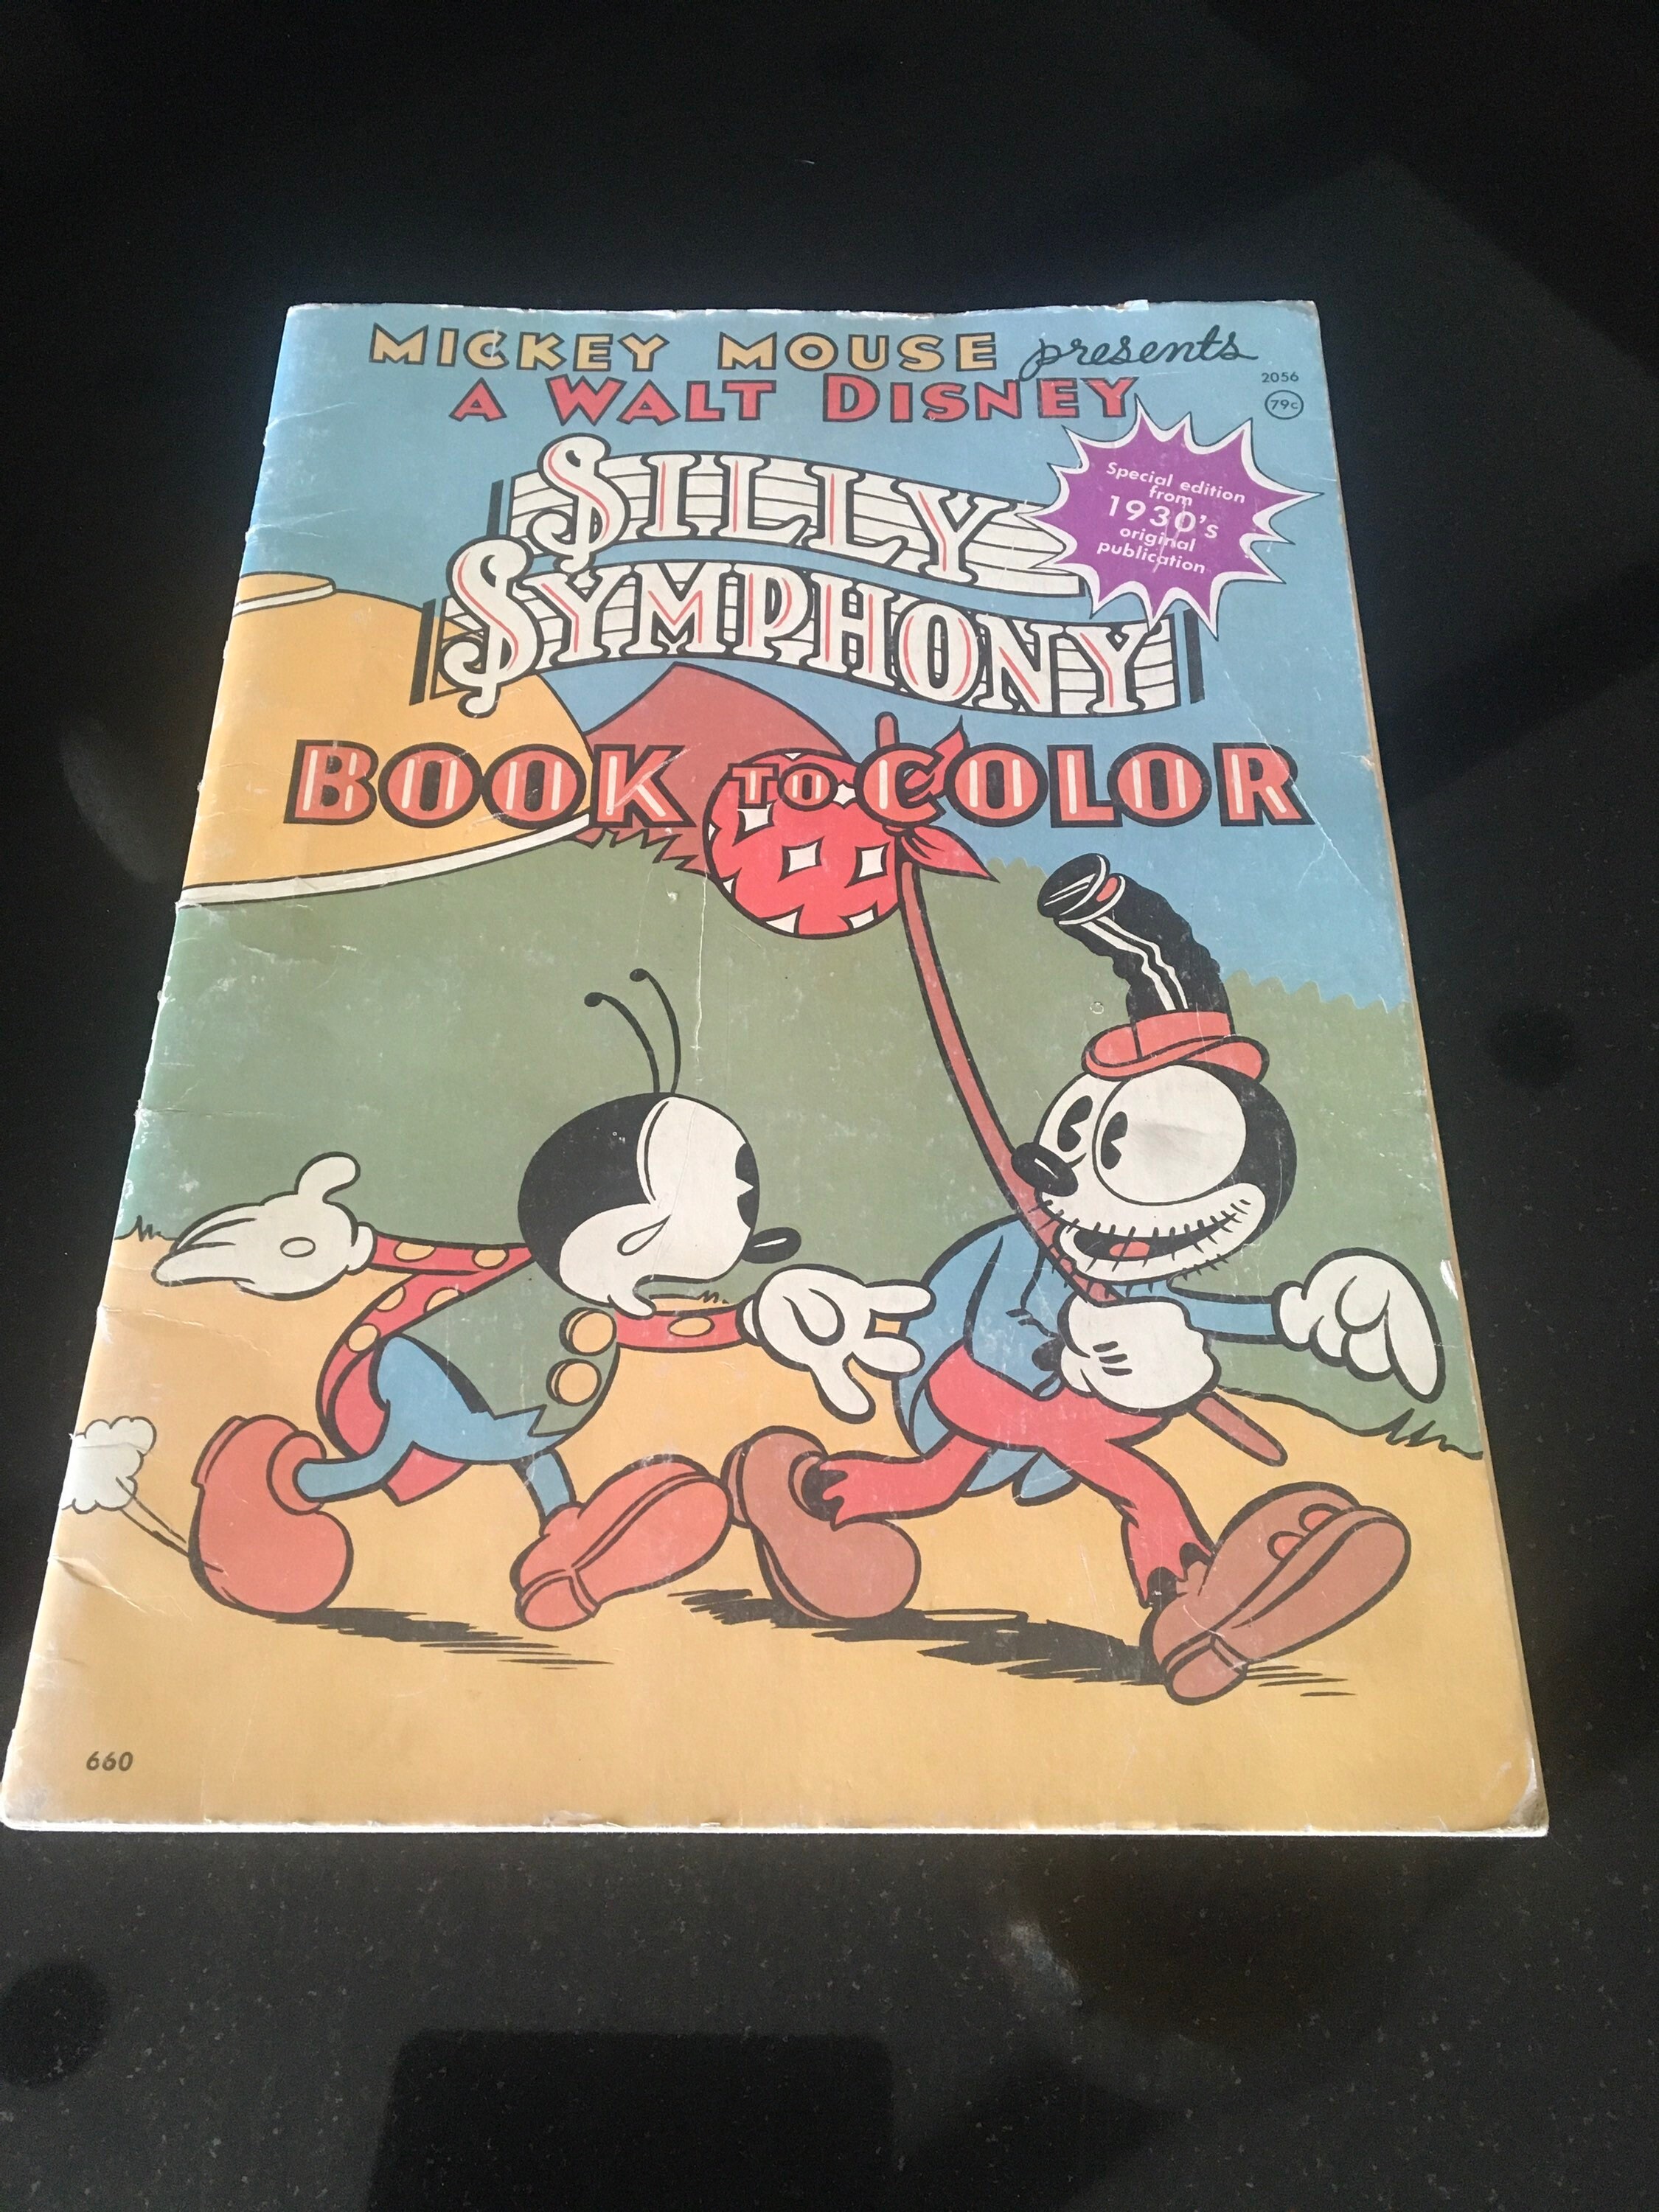 Disney Glass Set - Silly Symphony - The Skeleton Dance - Mickey Mouse